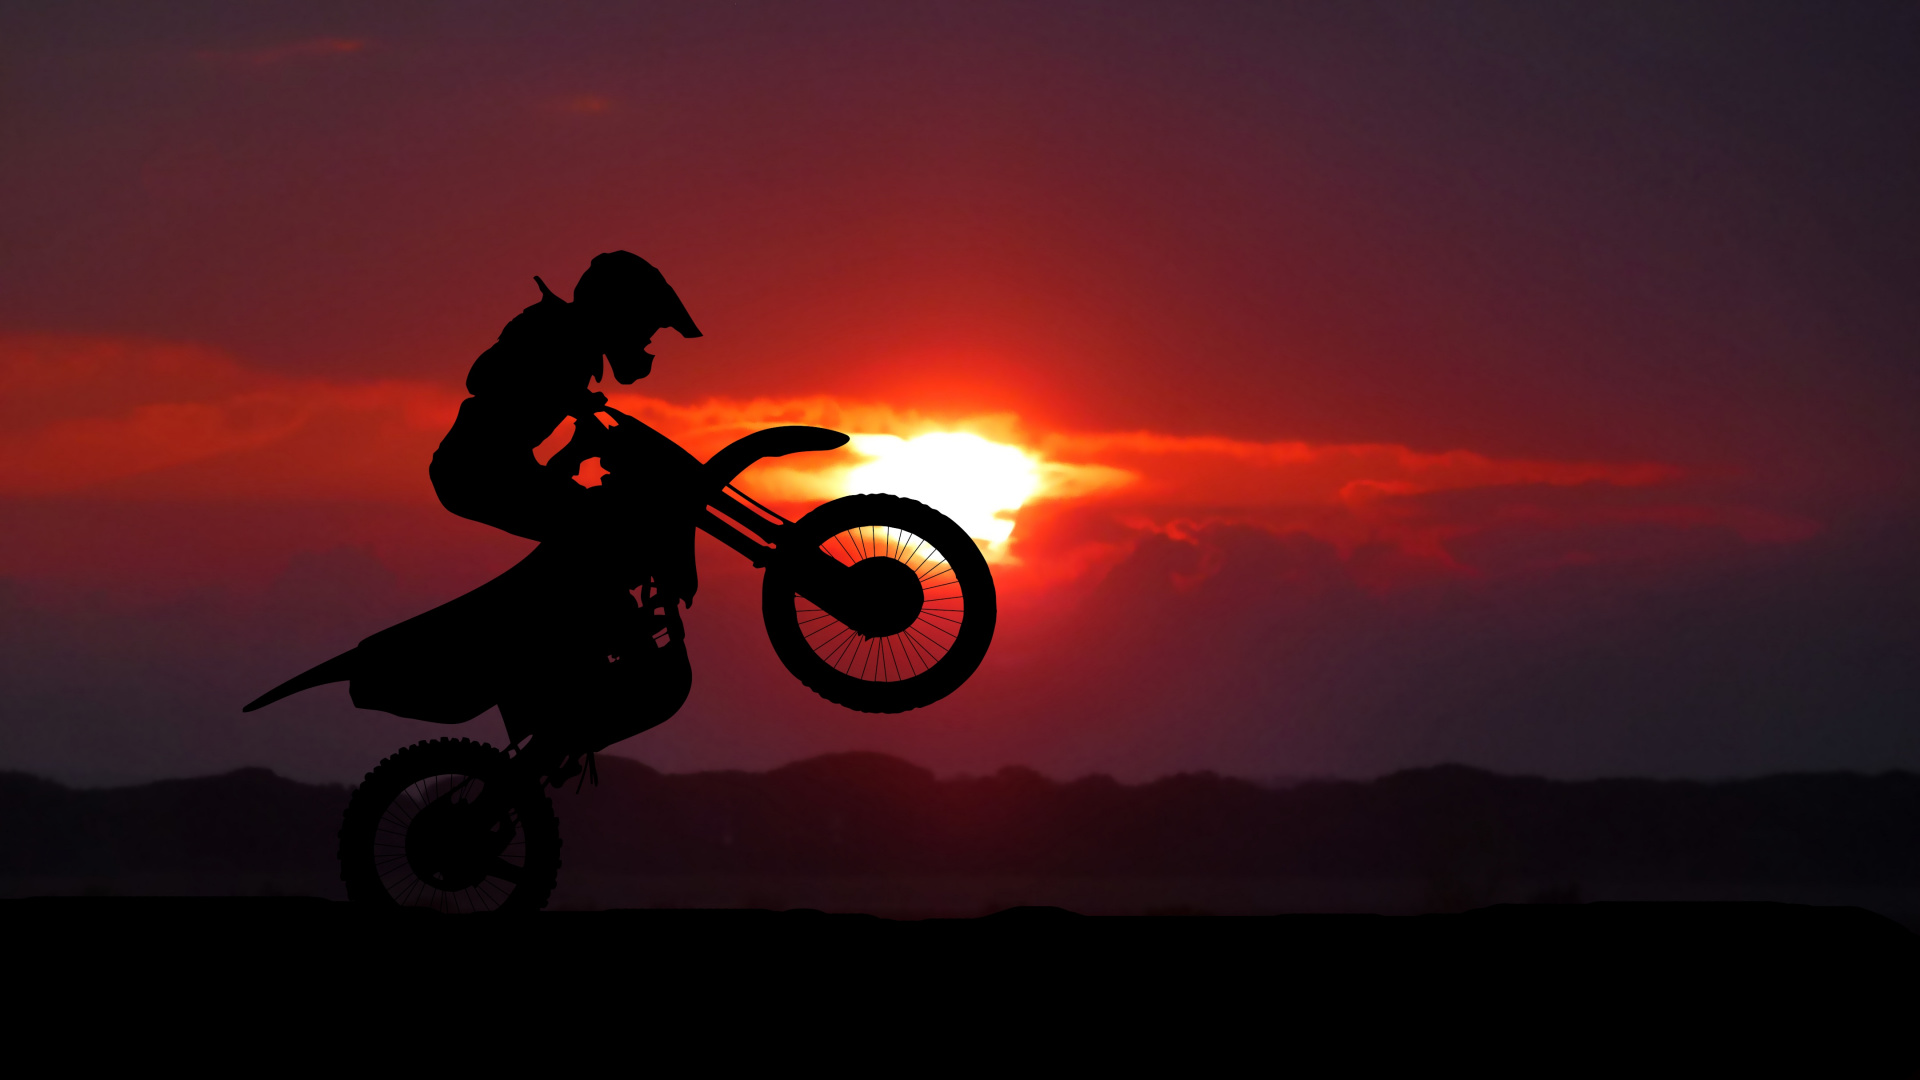 摩托车运动, 骑摩托车特技, 越野, 自由式的摩托车越野赛, 摩托车越野赛 壁纸 1920x1080 允许